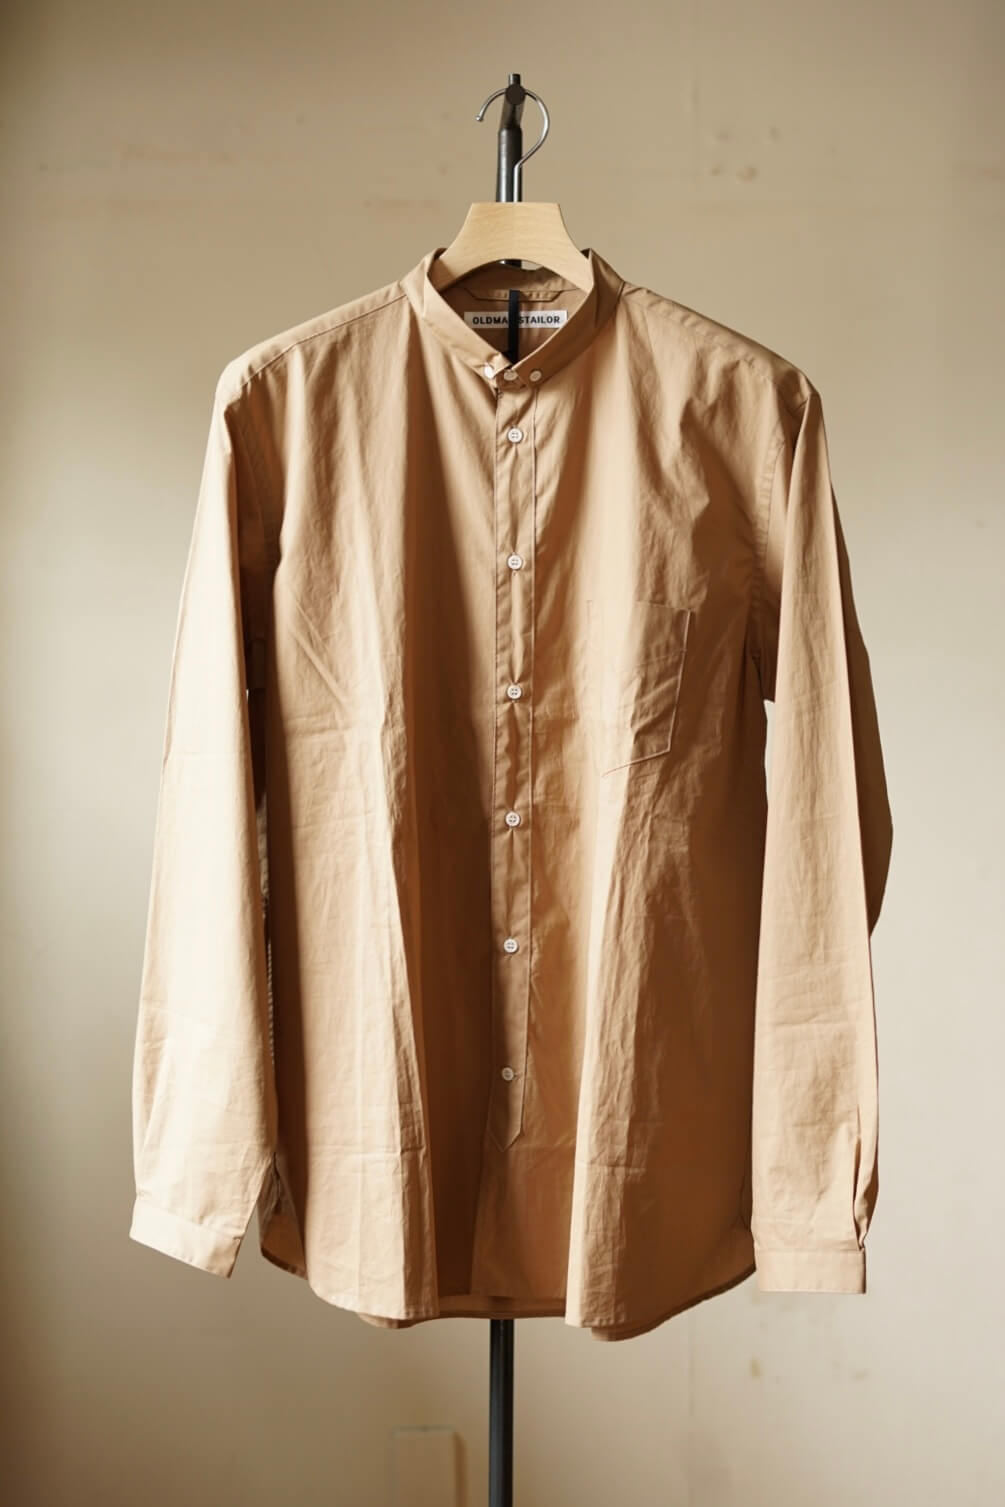 Oldman's Tailor / Small BD Collar Shirt